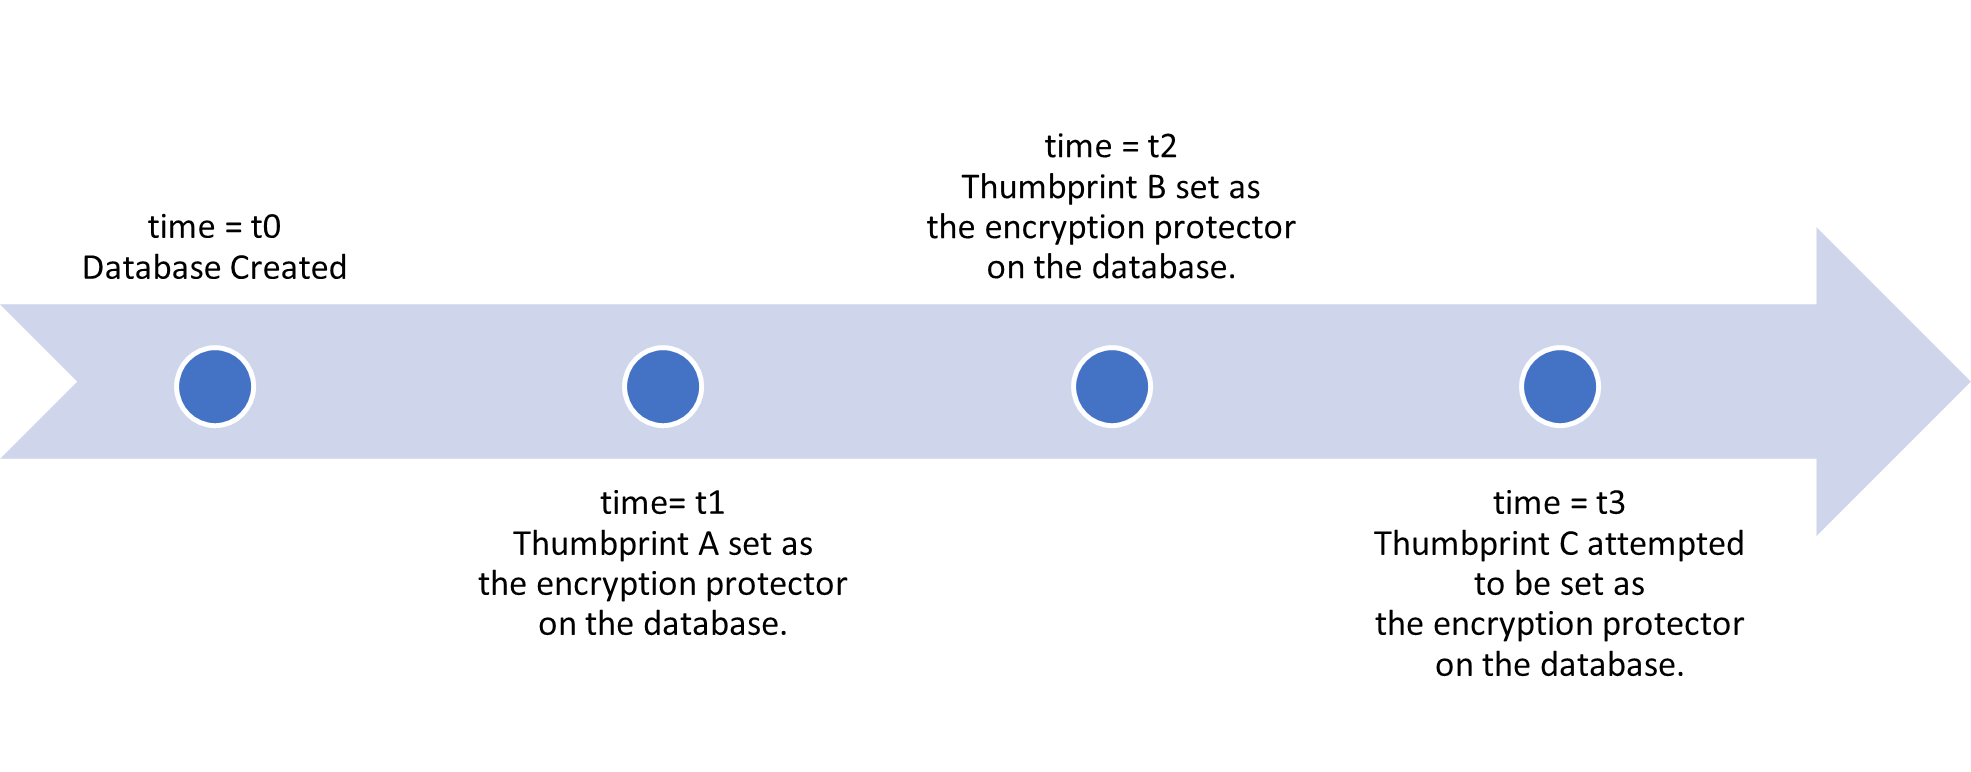 使用数据库级别客户管理的密钥配置的数据库上的密钥轮换时间线示例。